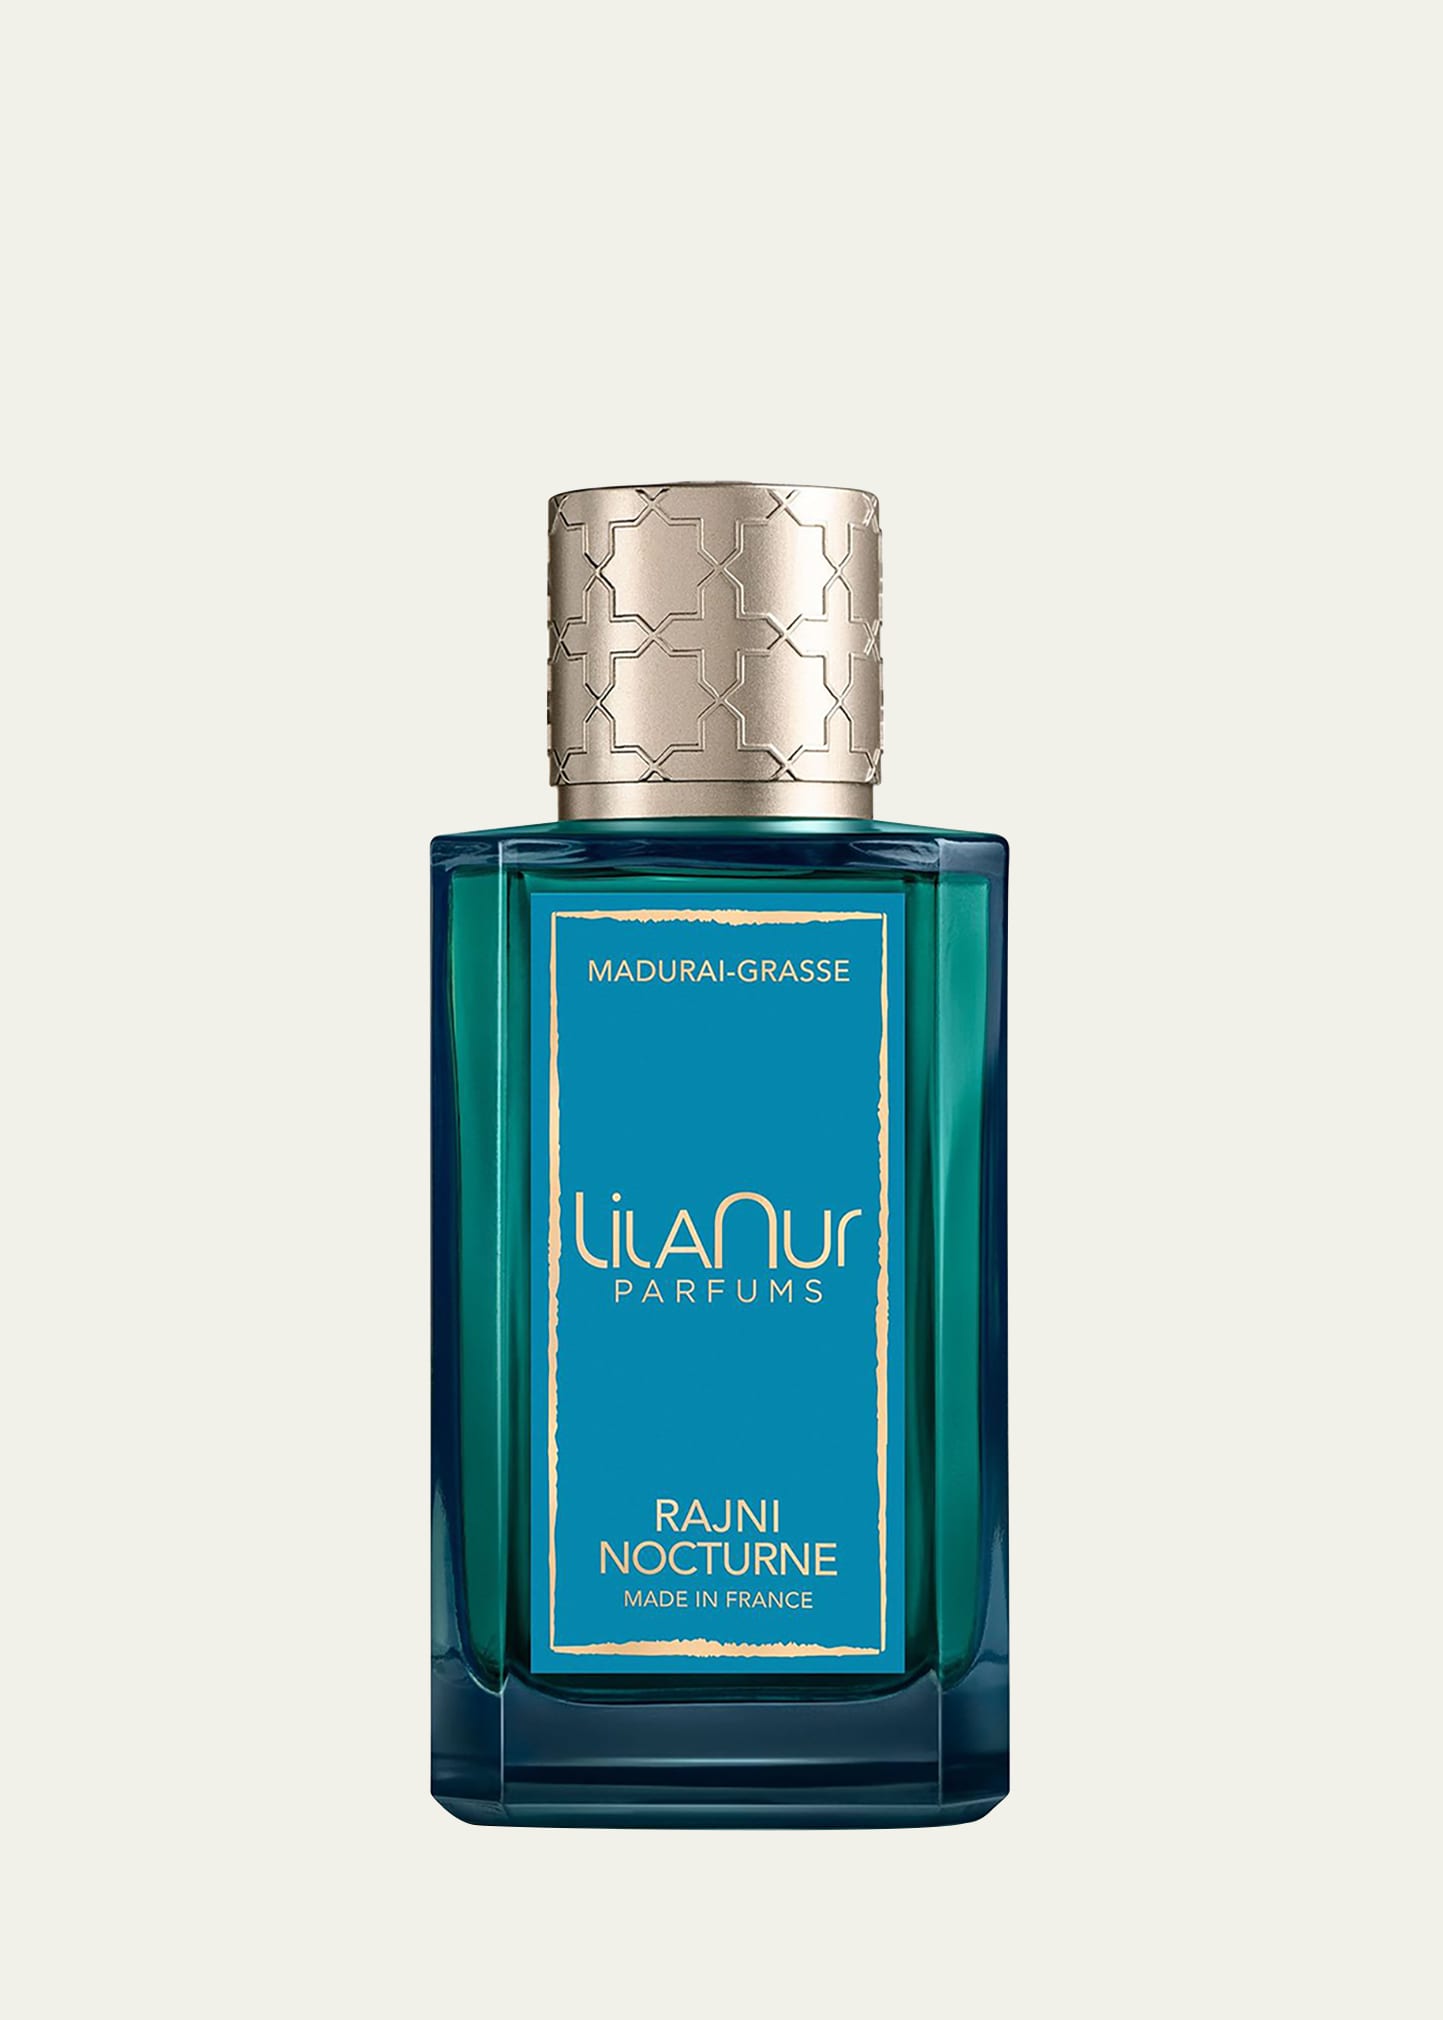 LilaNur Parfums Rajni Nocturne Eau de Parfum, 3.4 oz